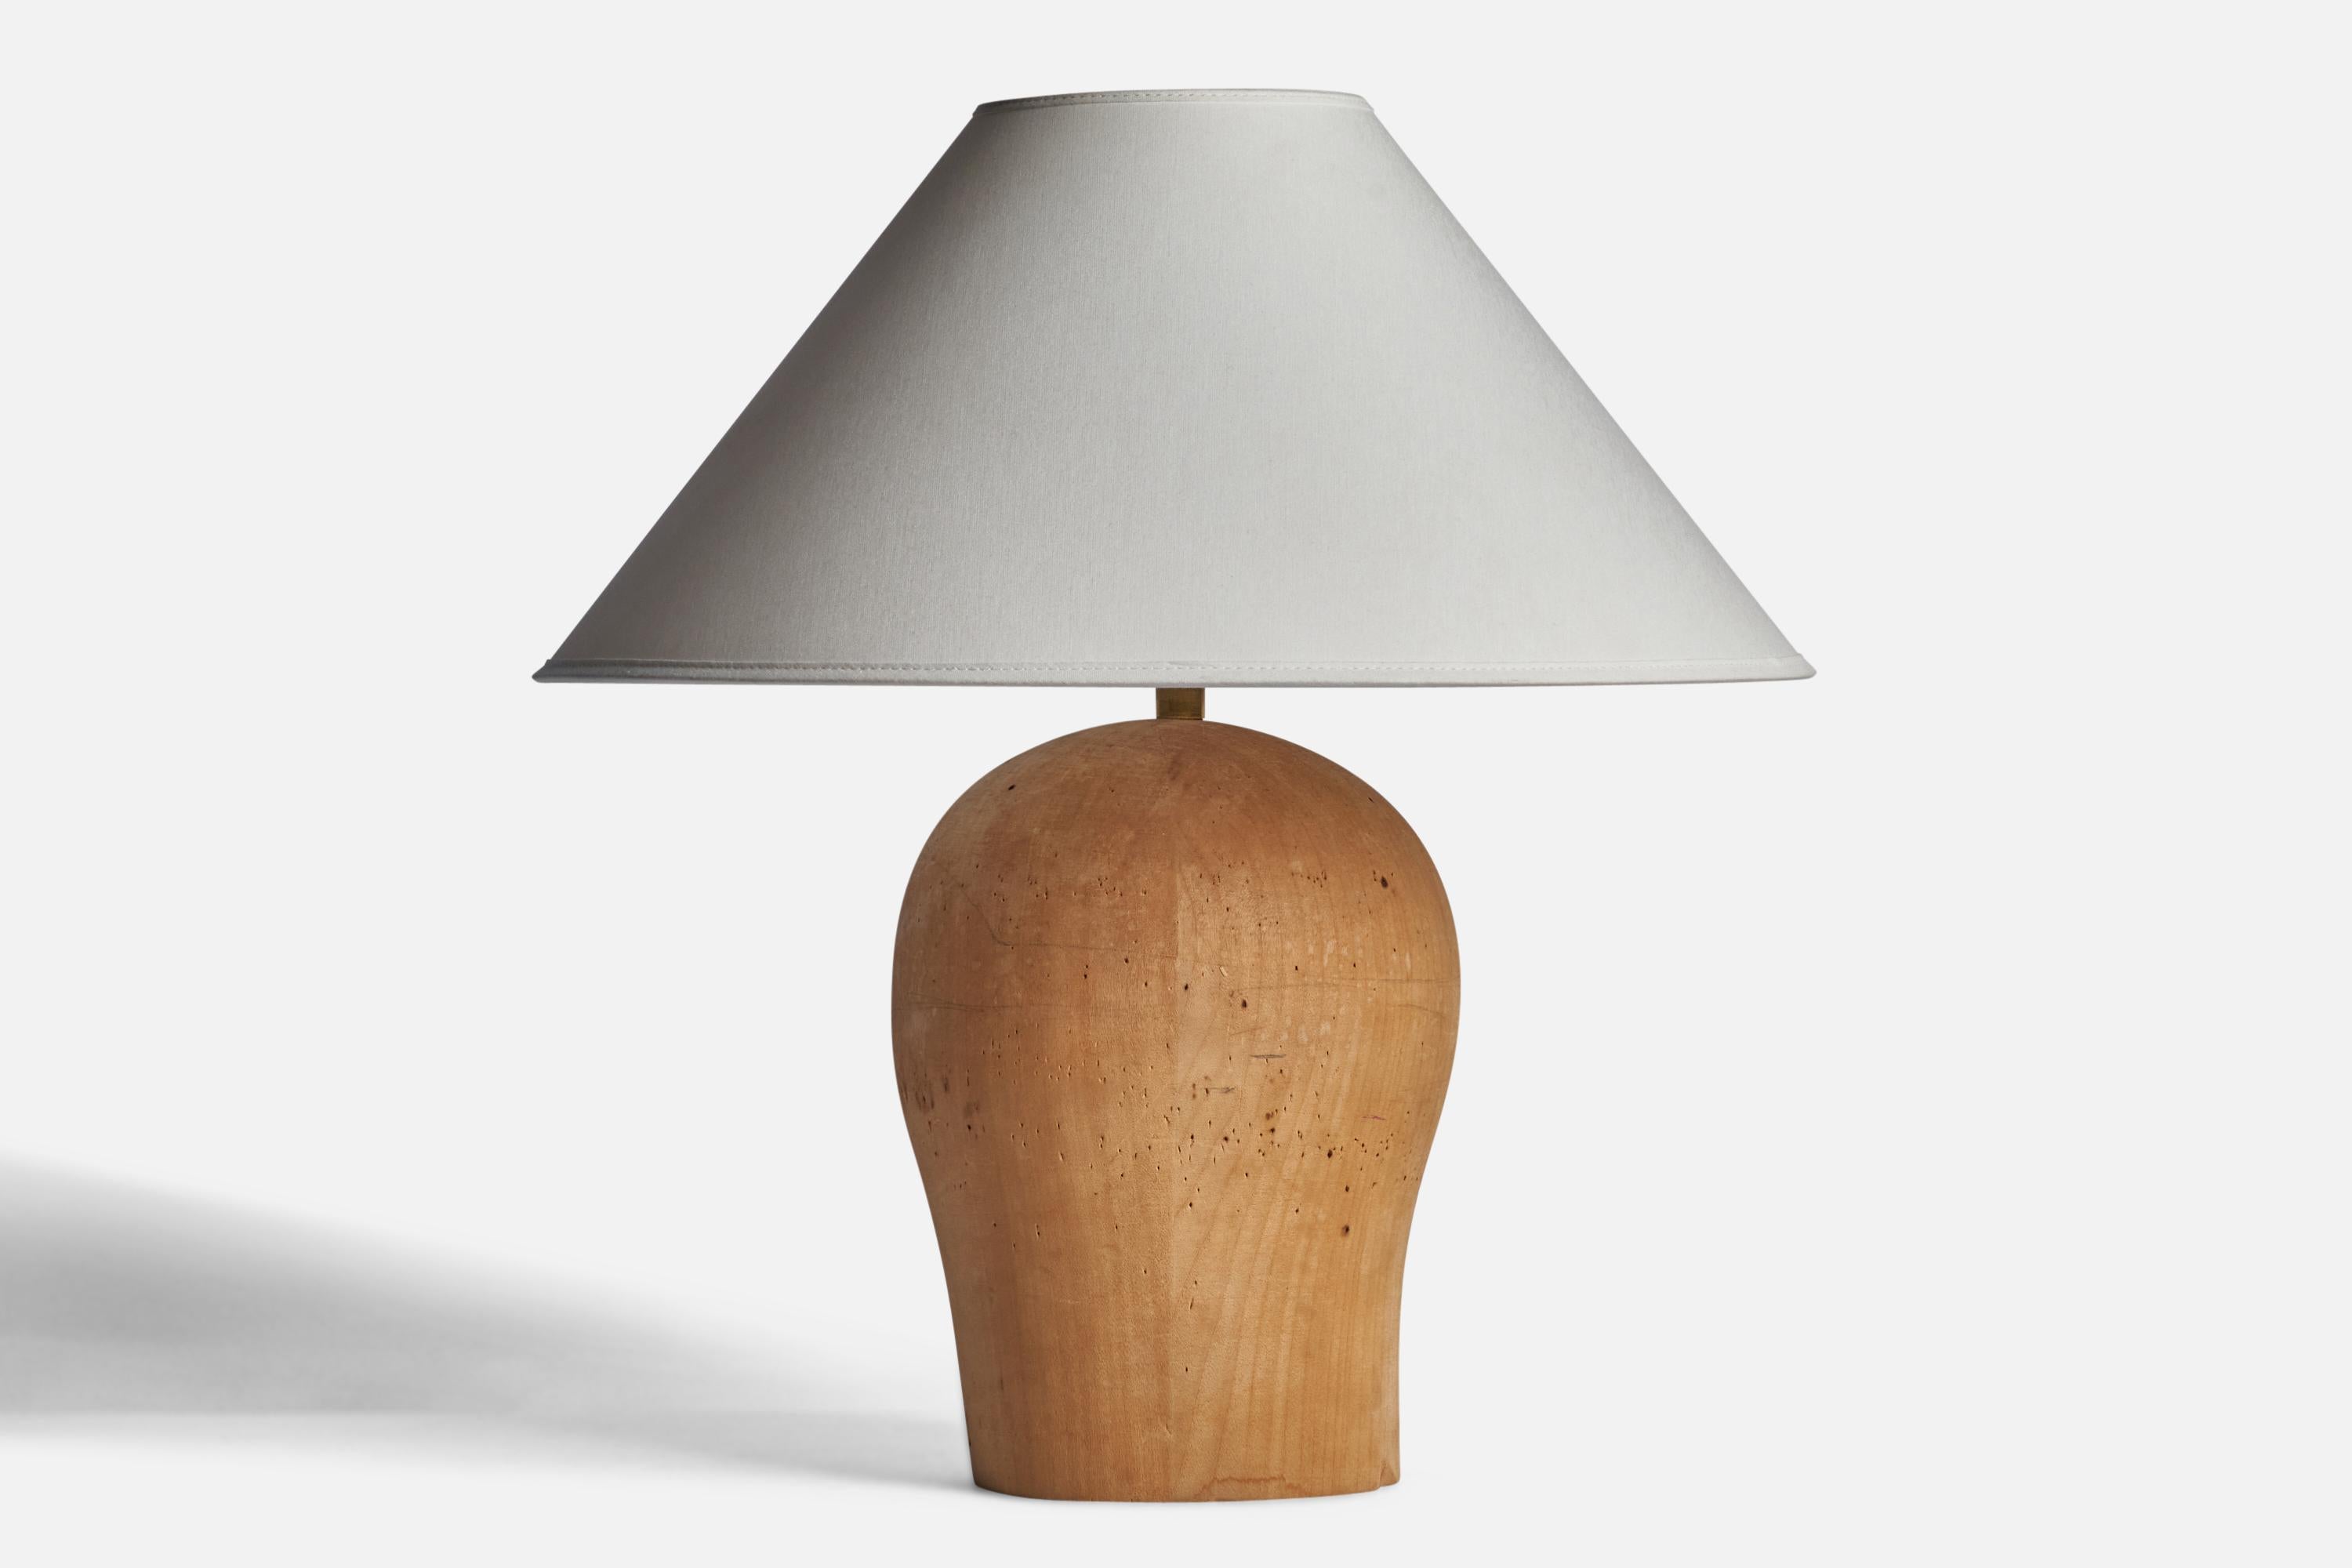 Lampe de table en bois conçue et produite en Suède, années 1940.

Dimensions de la lampe (pouces) : 12.25